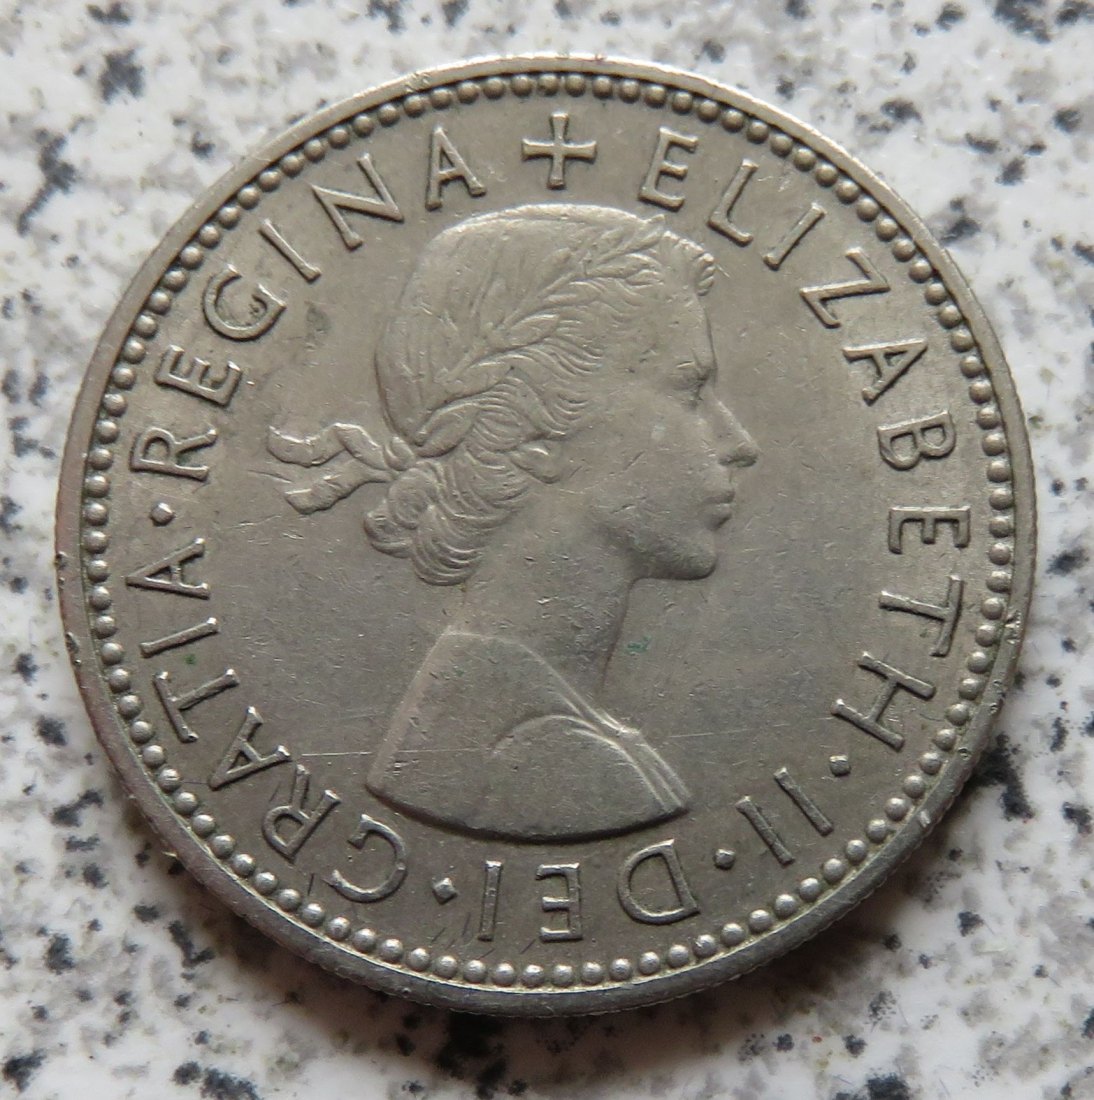  Großbritannien 1 Shilling 1956, Schottisch (3)   